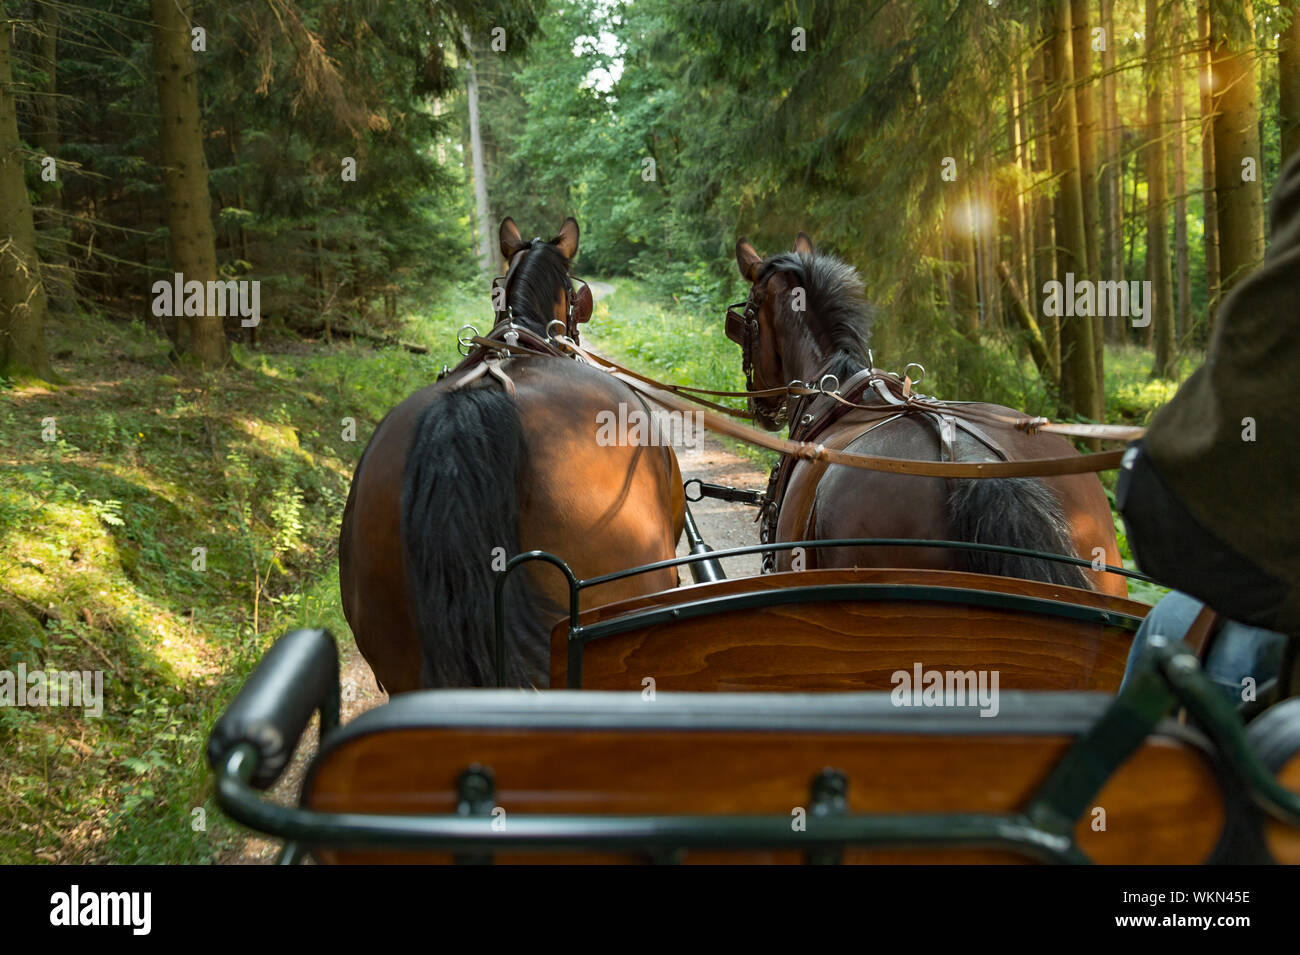 Zwei Pferde (Sächsische Thüringer schweren warmes Blut) ein Wagen in die grüne Landschaft ziehen. Im Vordergrund steht die Kutscher, er trägt legere Kleidung. Stockfoto